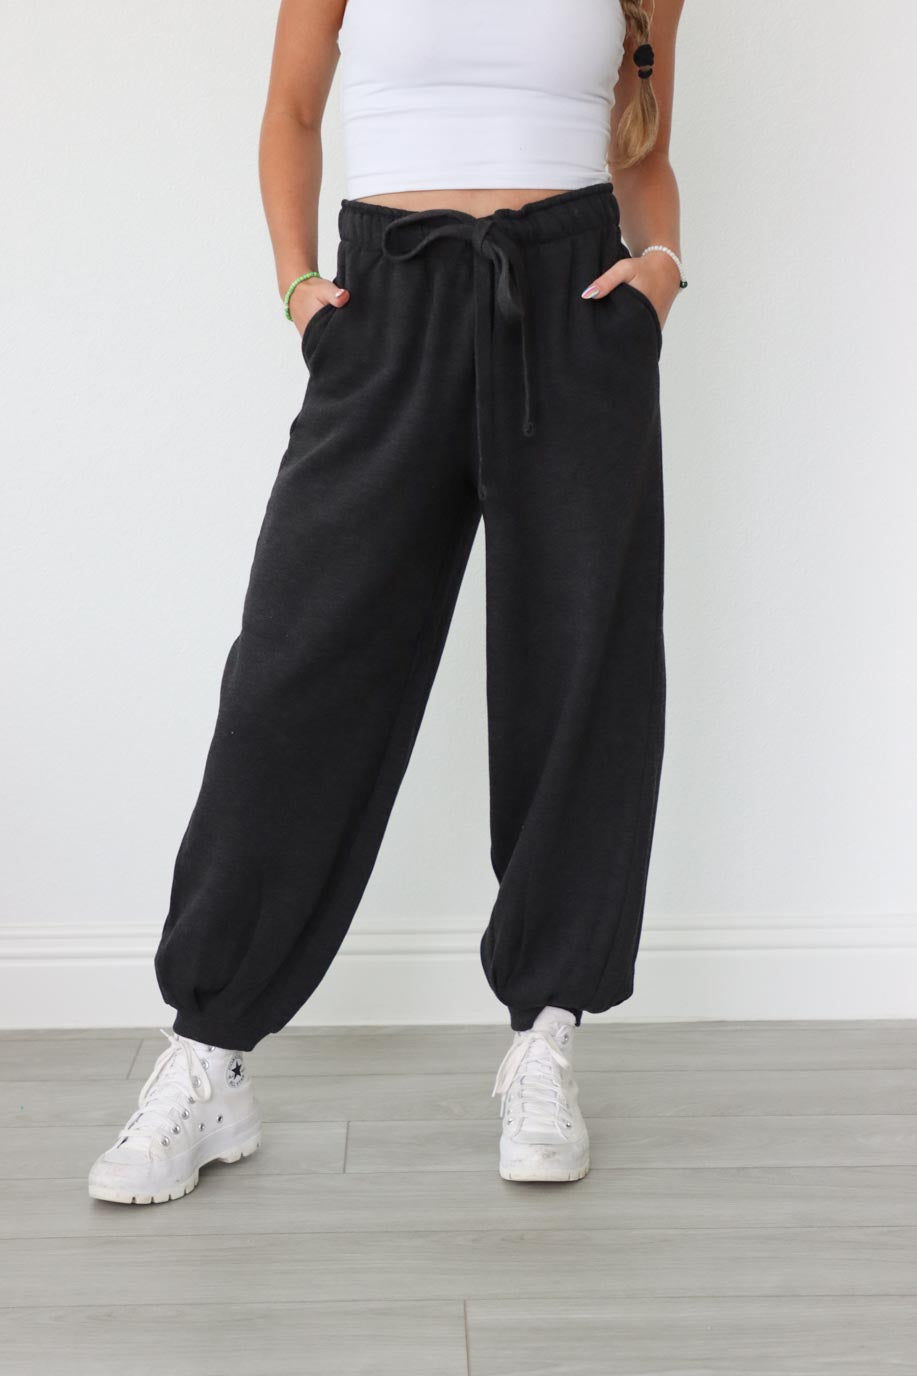 girl wearing dark gray drawstring sweatpants